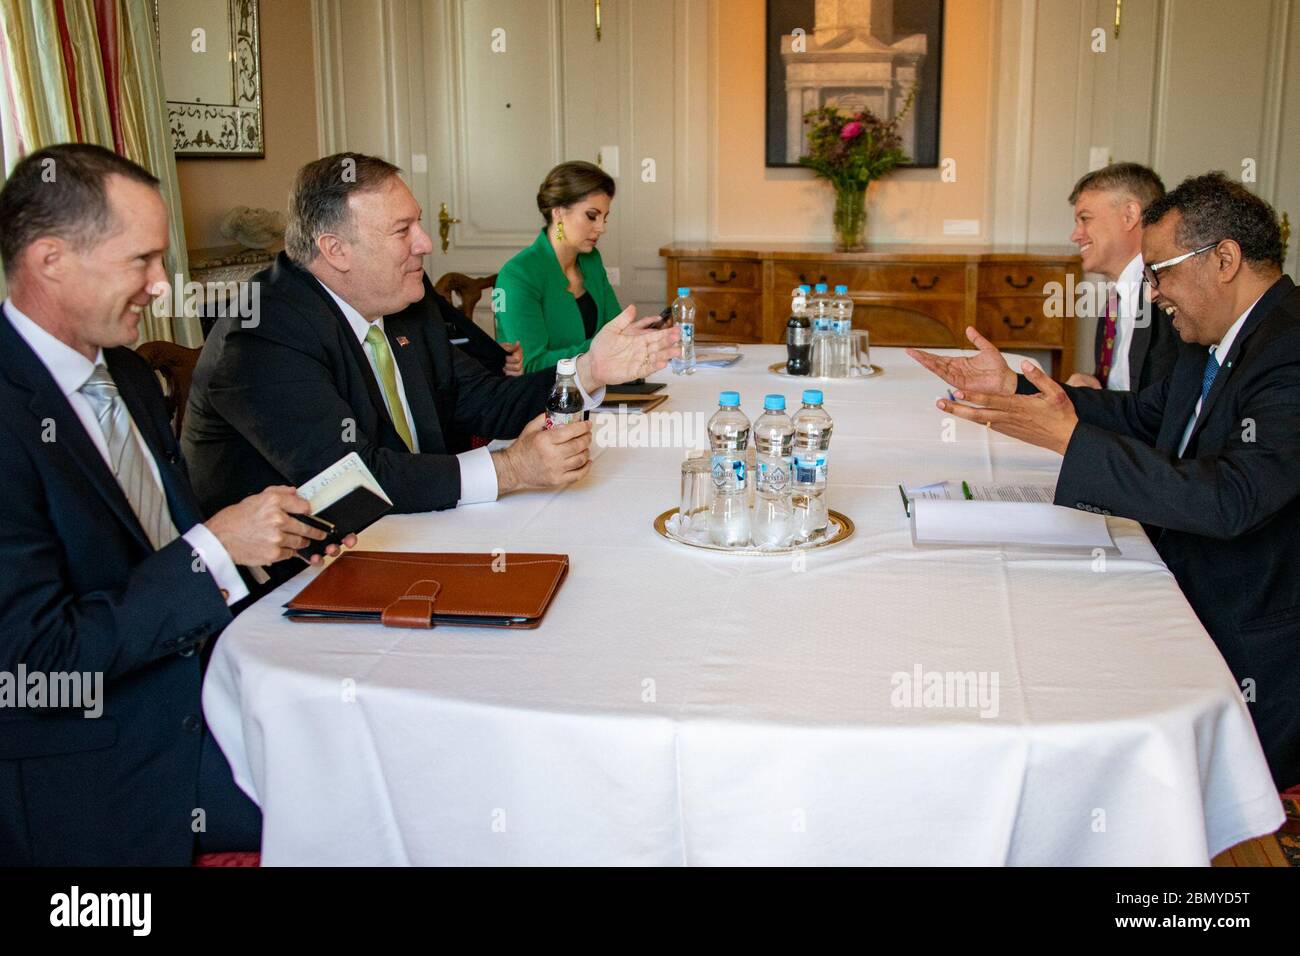 El Secretario Pompeo se reúne con el Director General DE LA OMS Dr. Ghebreyesus el Secretario de Estado de los Estados Unidos Michael R. Pompeo se reúne con el Director General de la Organización Mundial de la Salud Dr. Tedros Ghebreyesus, en Berna, Suiza, el 3 de junio de 2019. Foto de stock